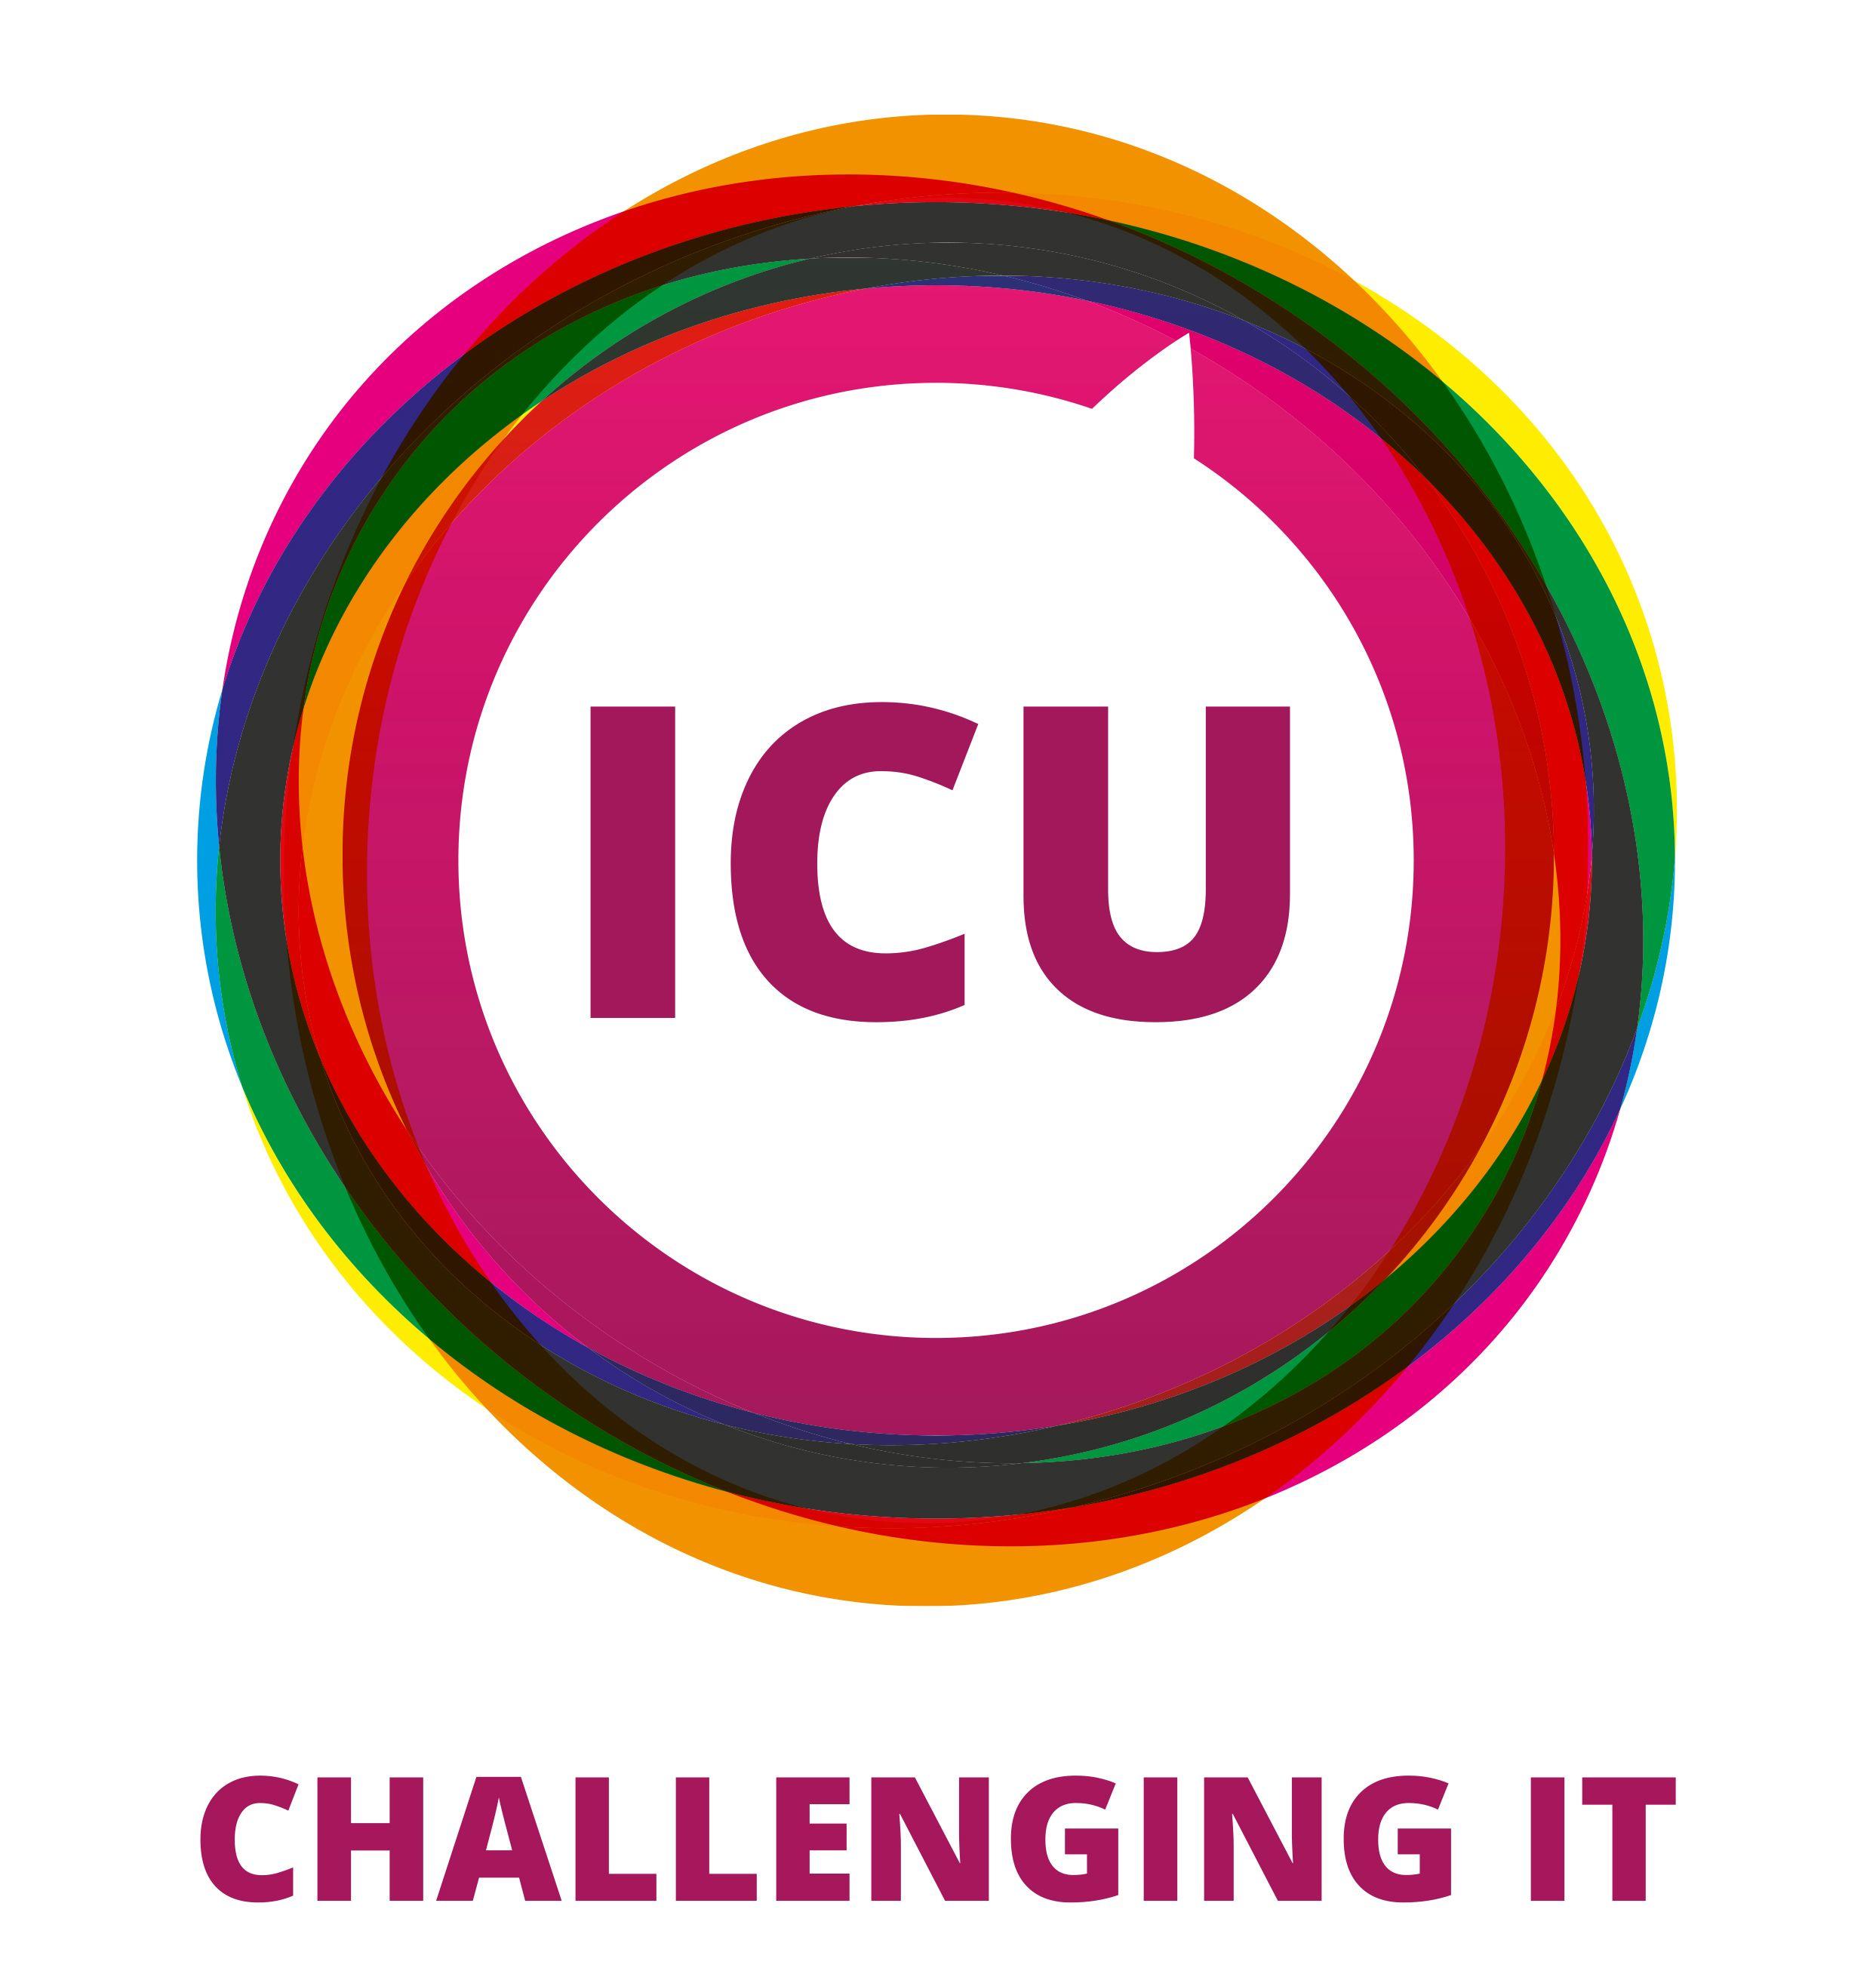 ICU Logo - About ICU IT!